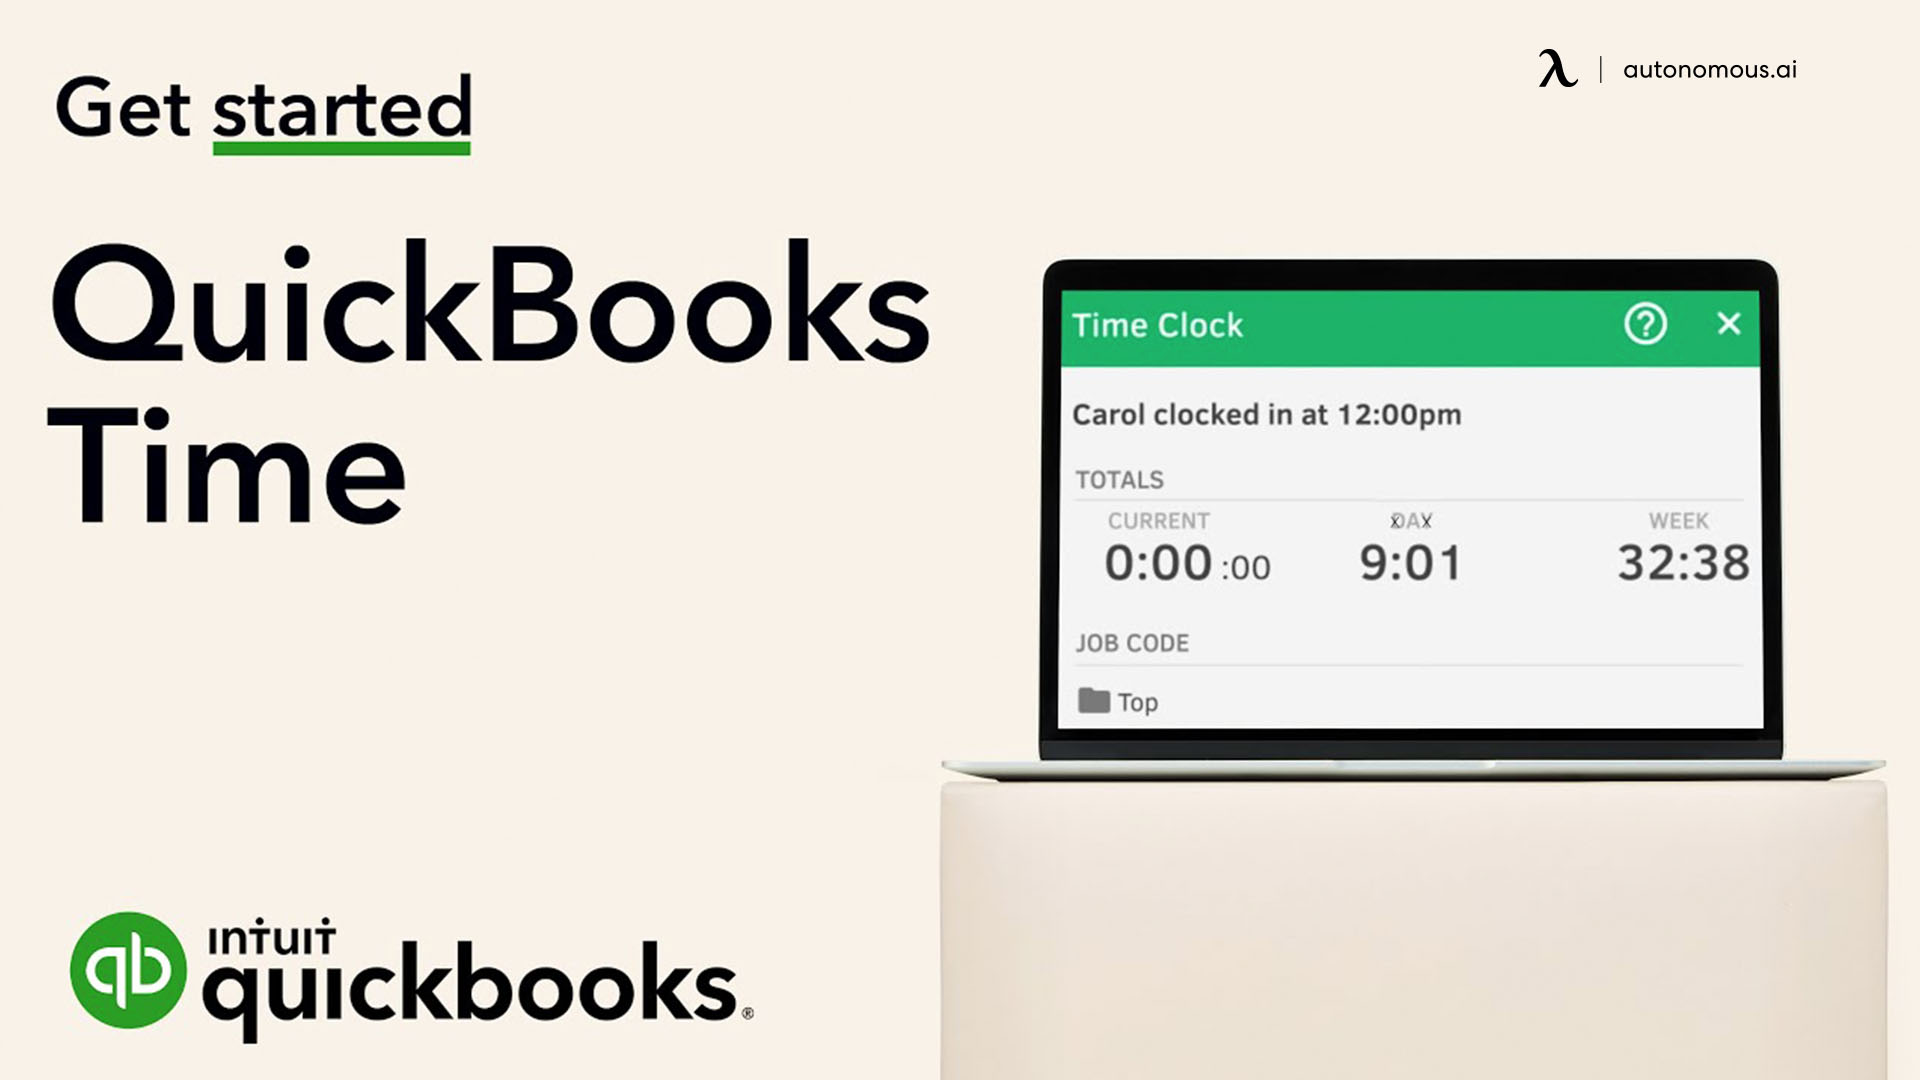 QuickBooks Time